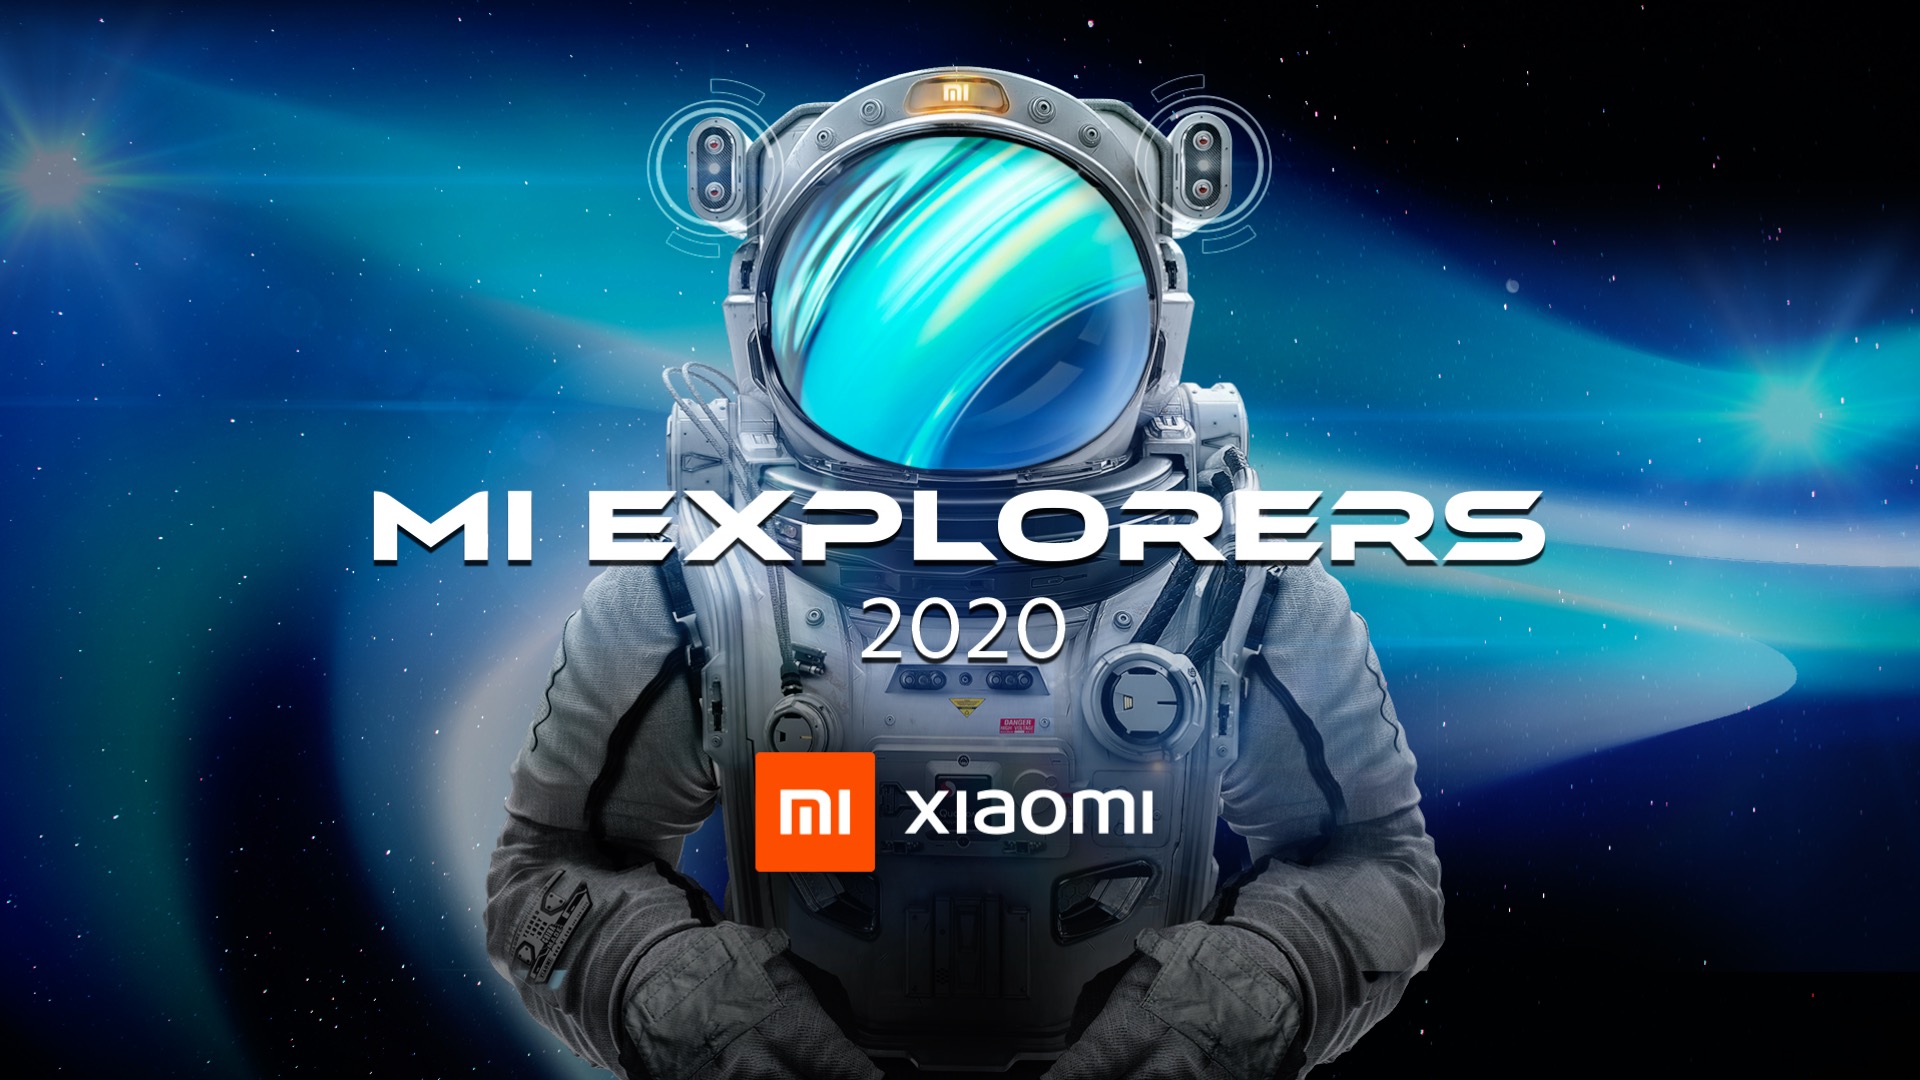 Xiaomi: program "Mi Explorers 2020" kembali, apa yang Anda tunggu untuk berpartisipasi? 1